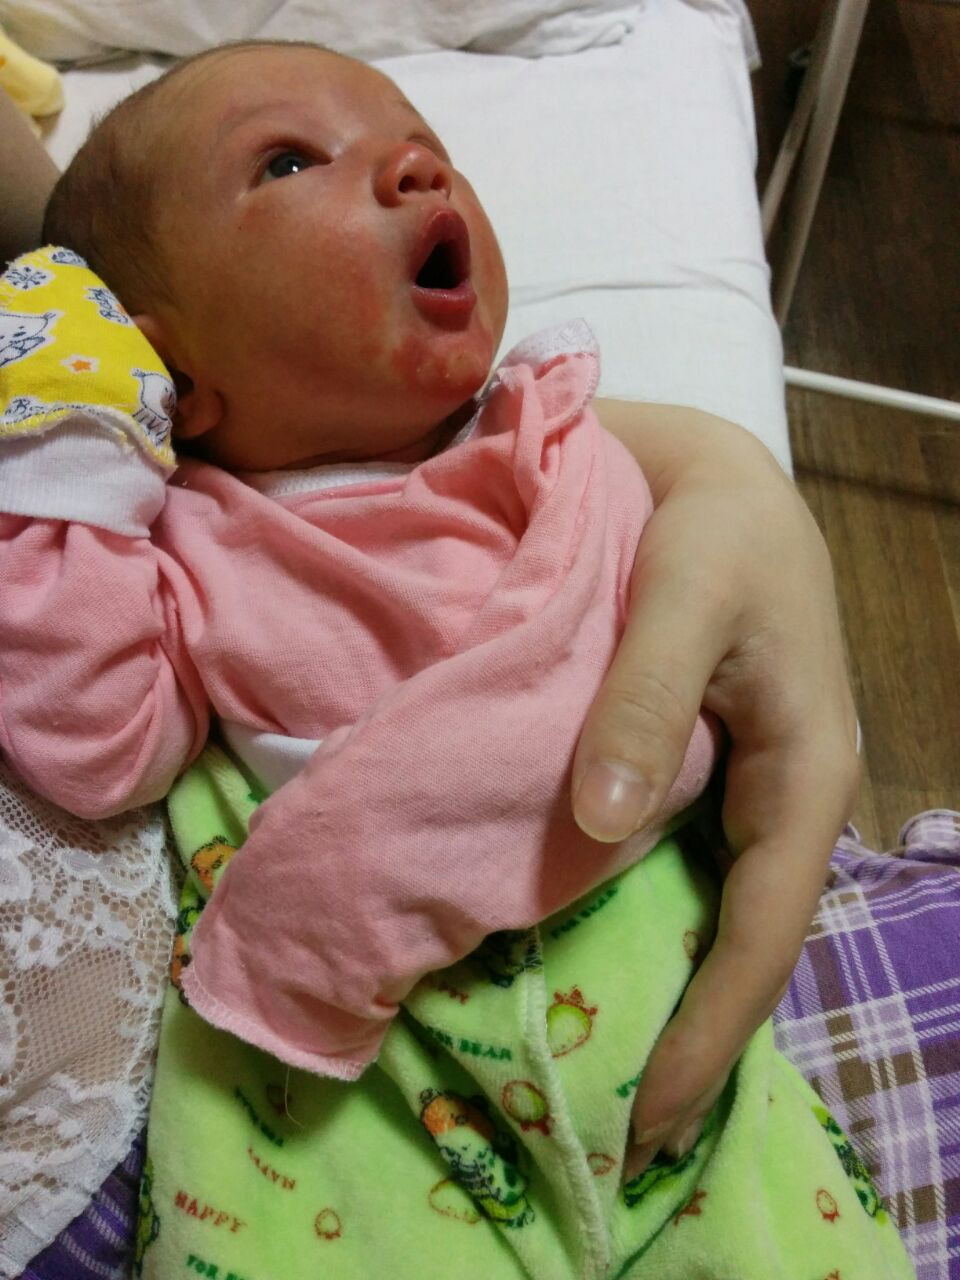 Проблемы со стулом у новорожденного на искусственном вскармливании до 1 месяца